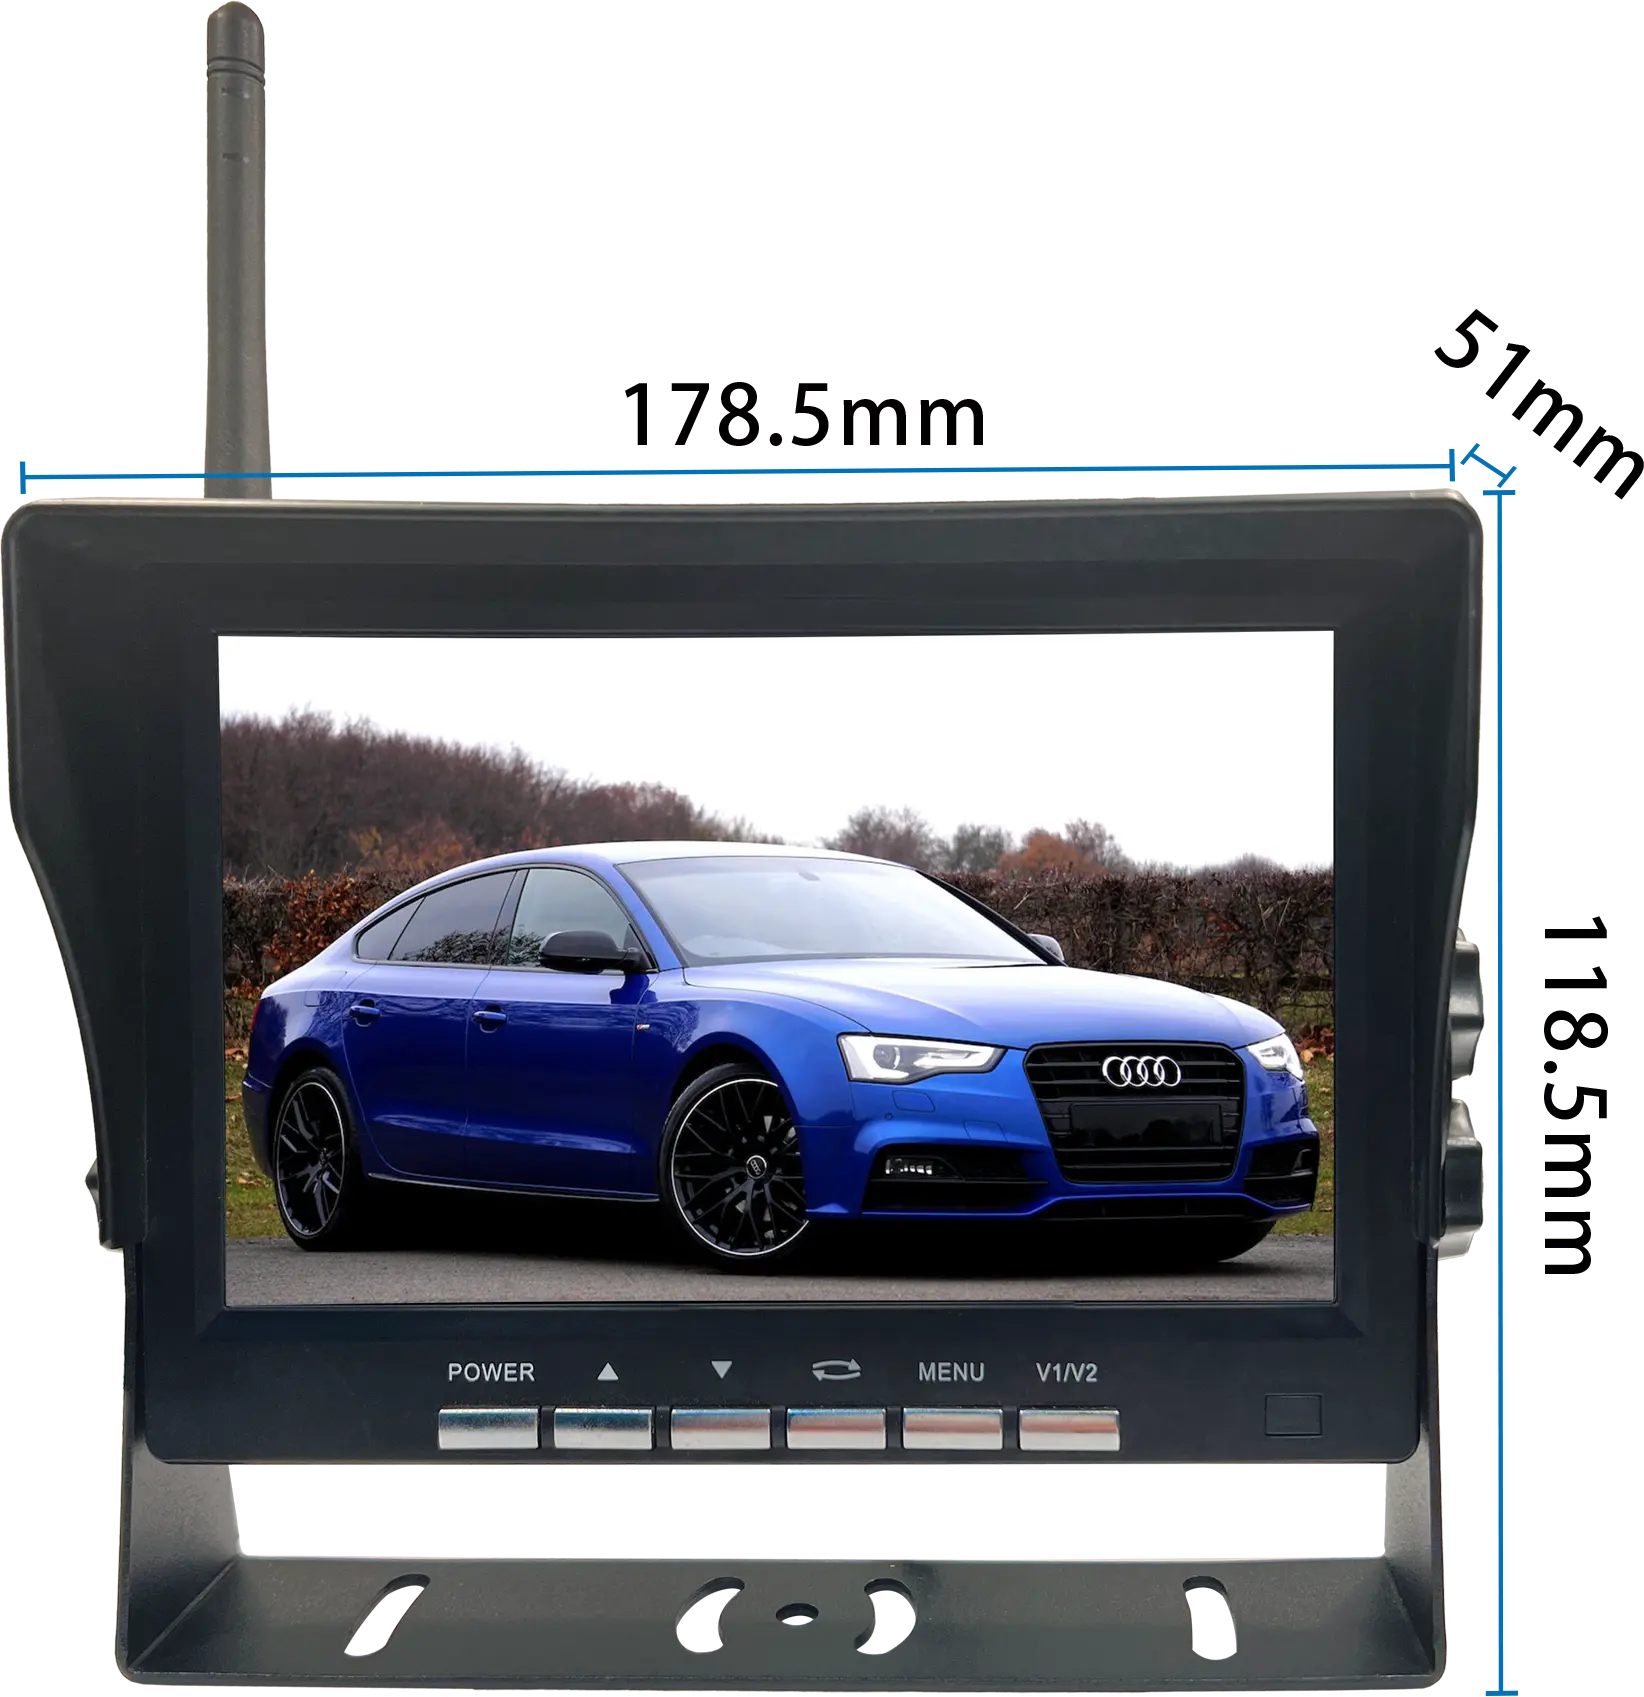 7 pollici quad HD ip schermo senza fili dash camera sistema di aiuto di retromarcia monitor per auto bus veicolo camion